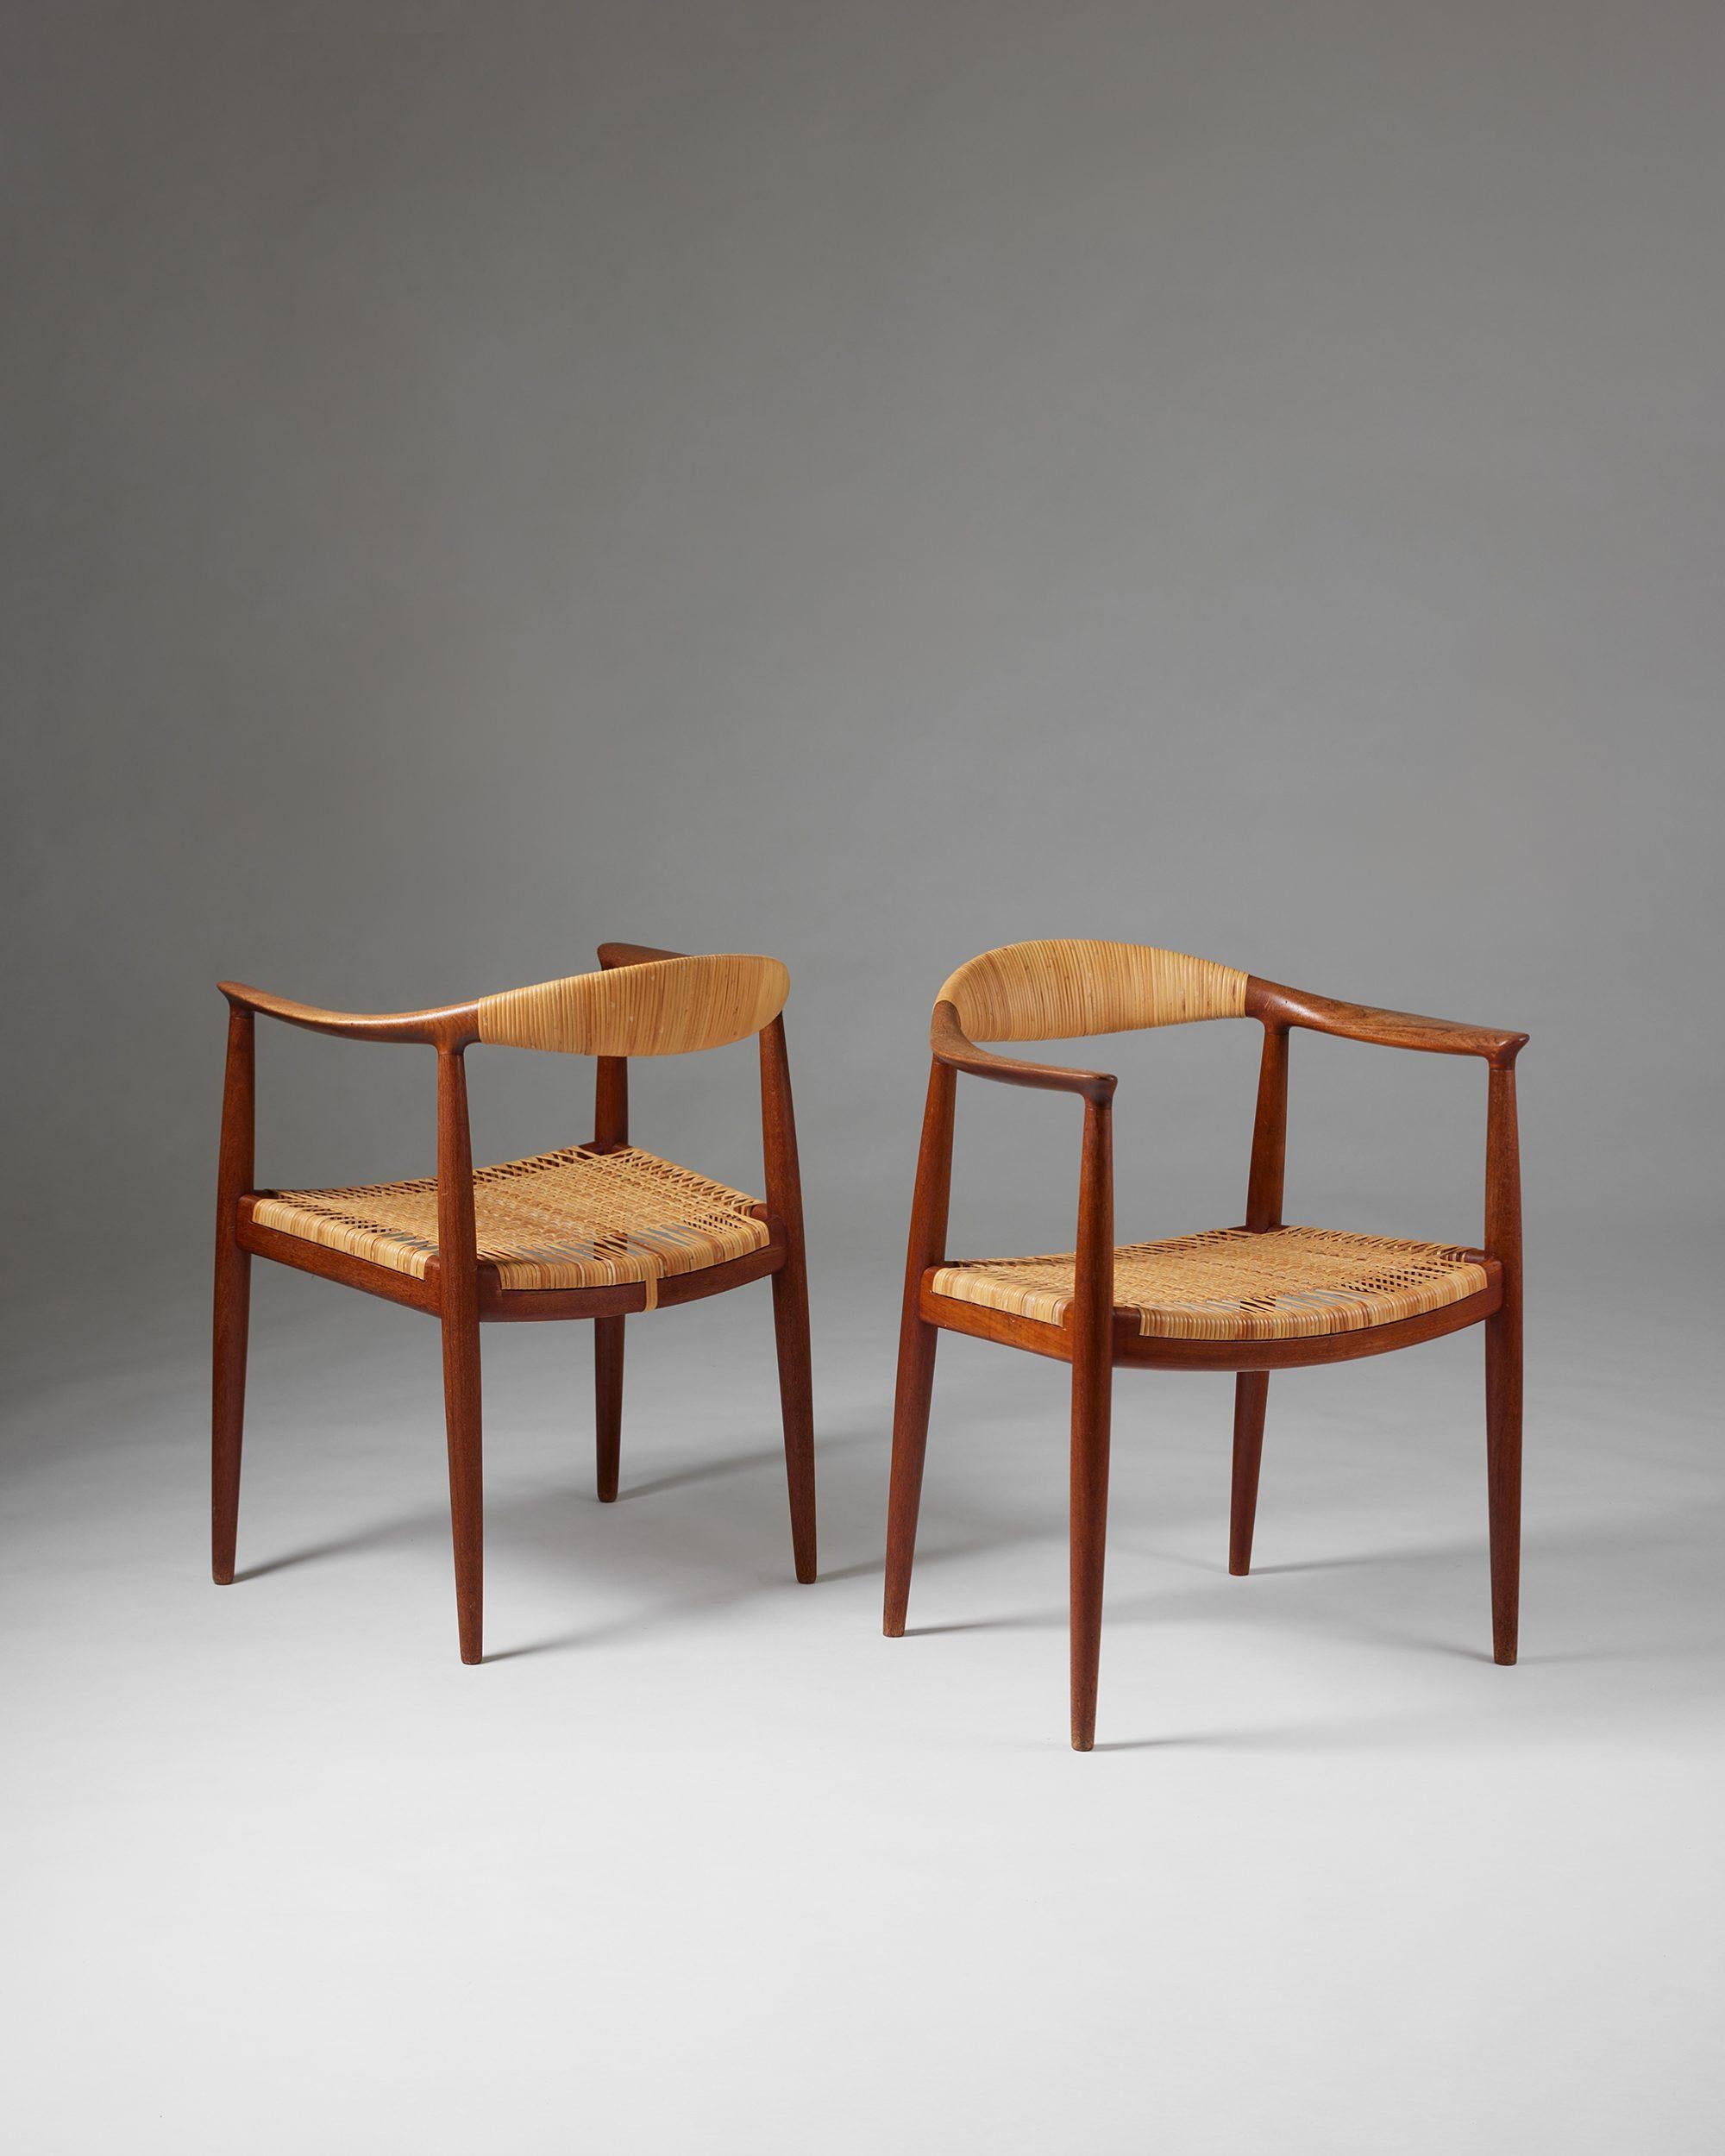 Paire de fauteuils 'The Chair' modèle JH 501 conçus par Hans J. Wegner pour Johannes Hansen,
Danemark, 1949.

Teck et canne.

Premier modèle avec le dossier canné.

Estampillé.

H : 76 cm
L : 63 cm
D : 50 cm
Hauteur des bras : 68.5 cm
Hauteur du